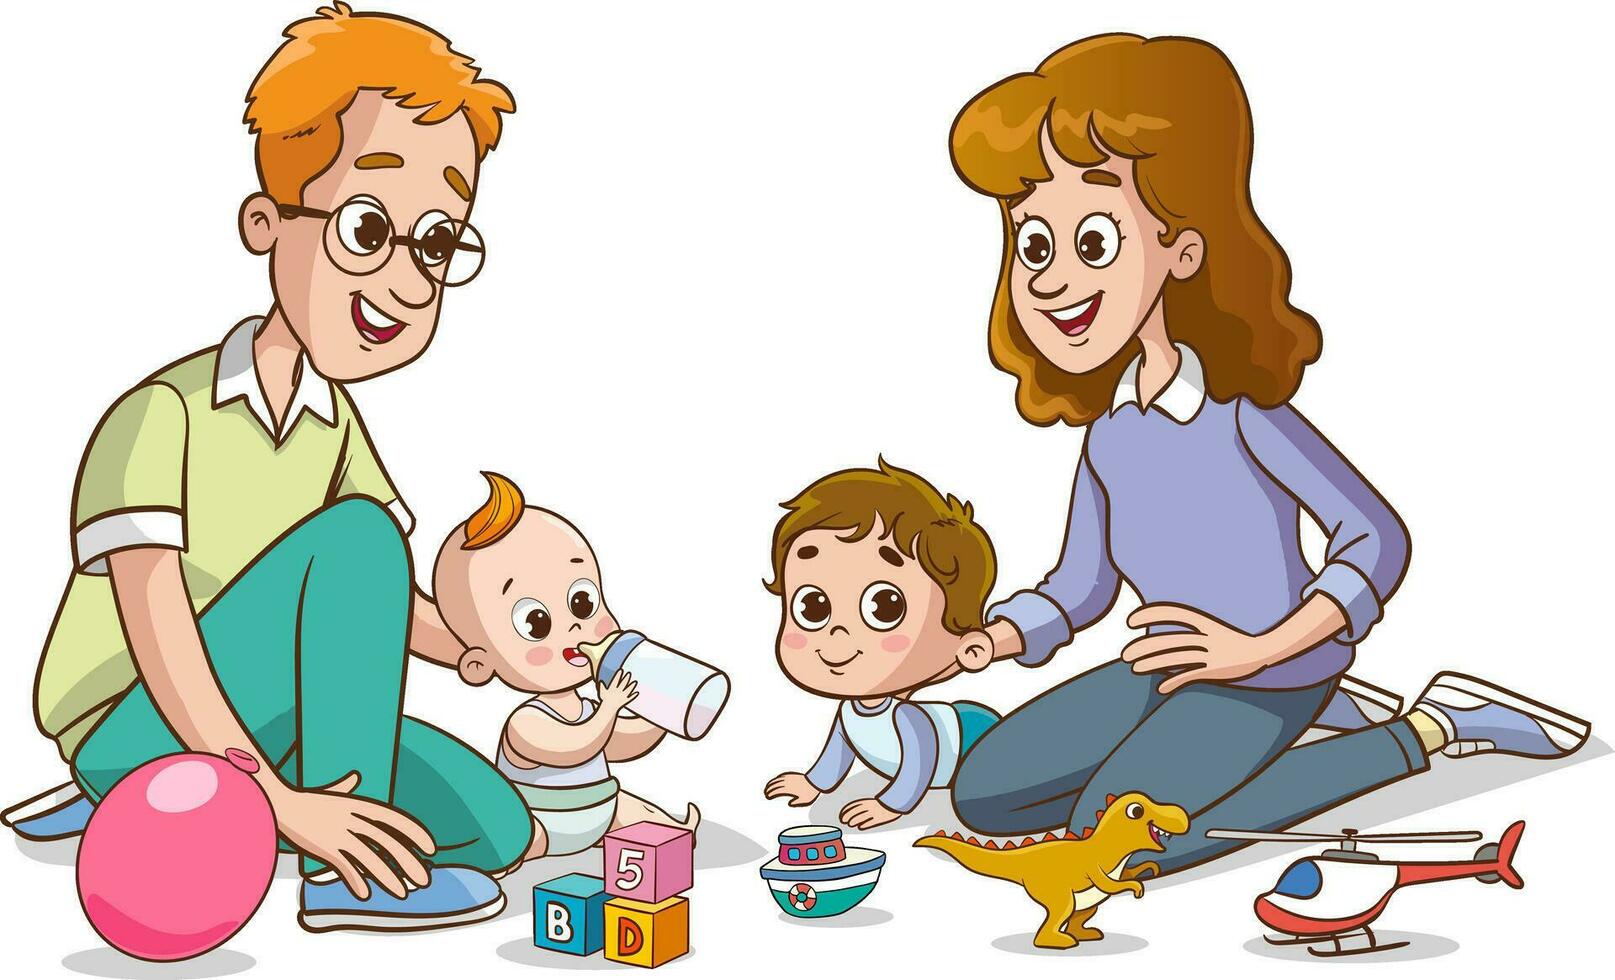 madre y padre jugando con su bebé. vector ilustración de un dibujos animados familia.